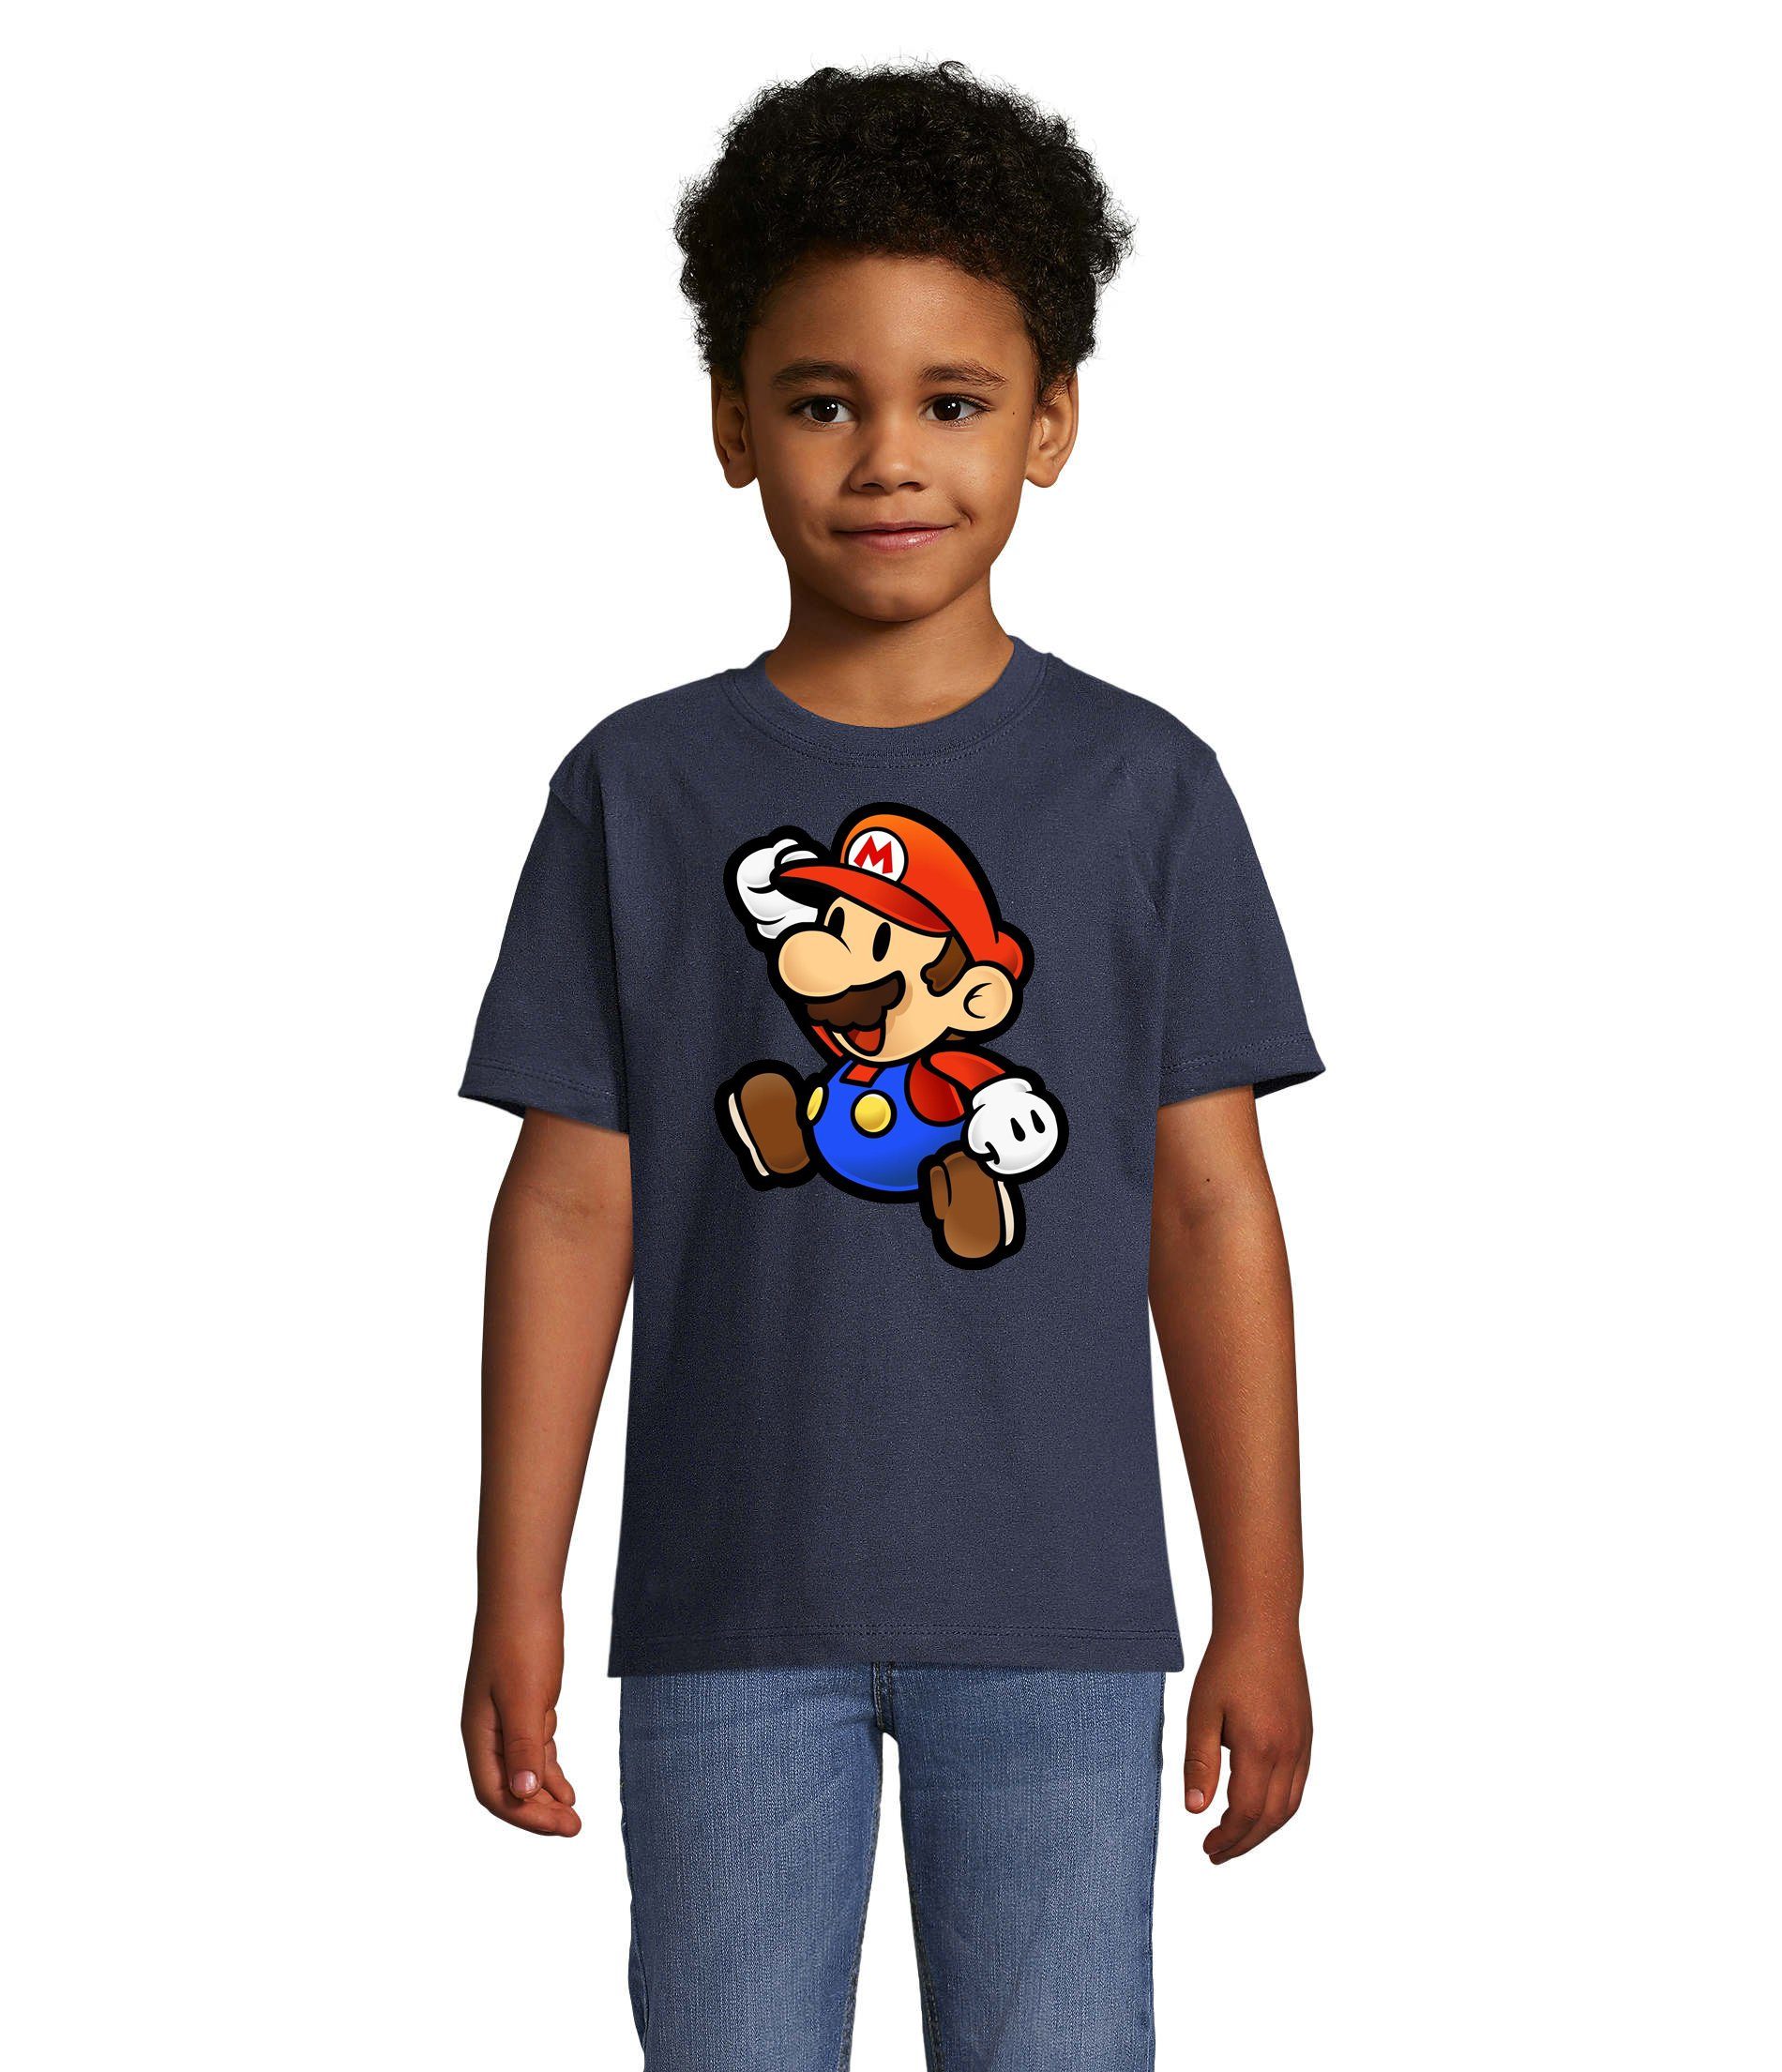 Blondie & Brownie T-Shirt Kinder Jungen & Mädchen Mario Nintendo Gaming Luigi Yoshi Super in vielen Farben Navyblau